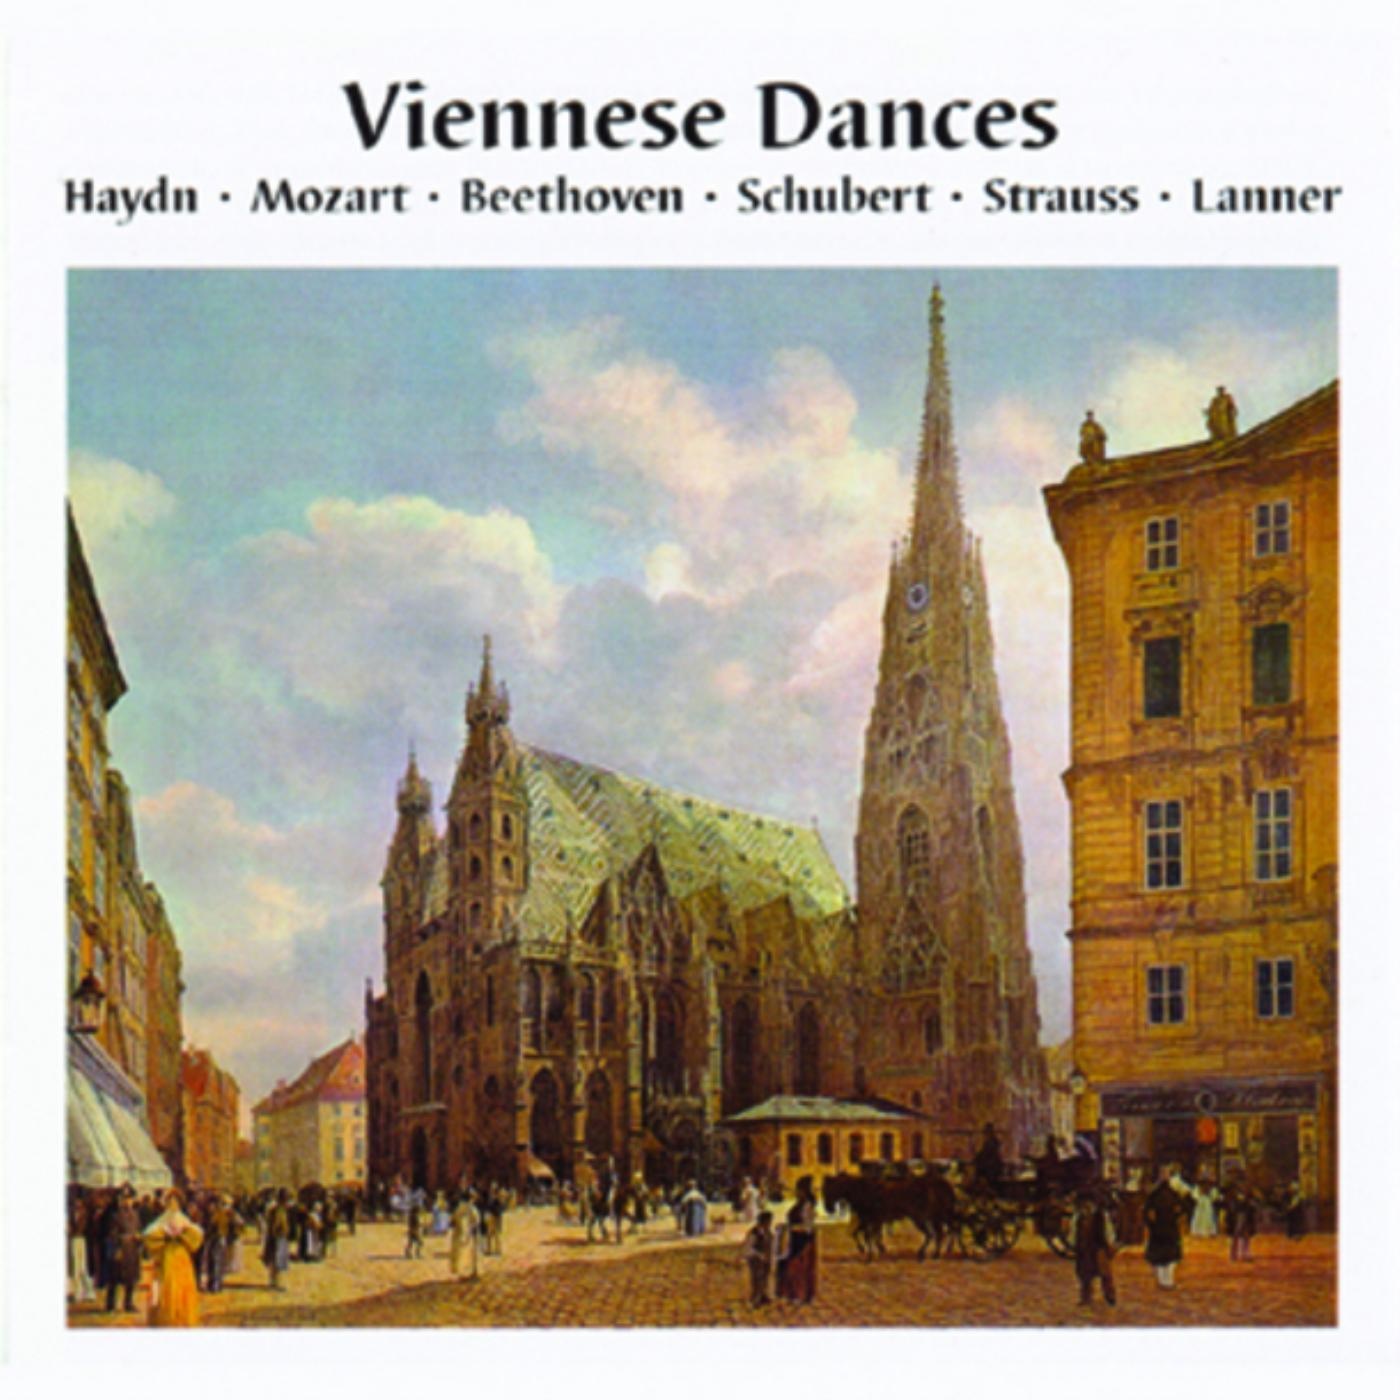 Viennese Dances